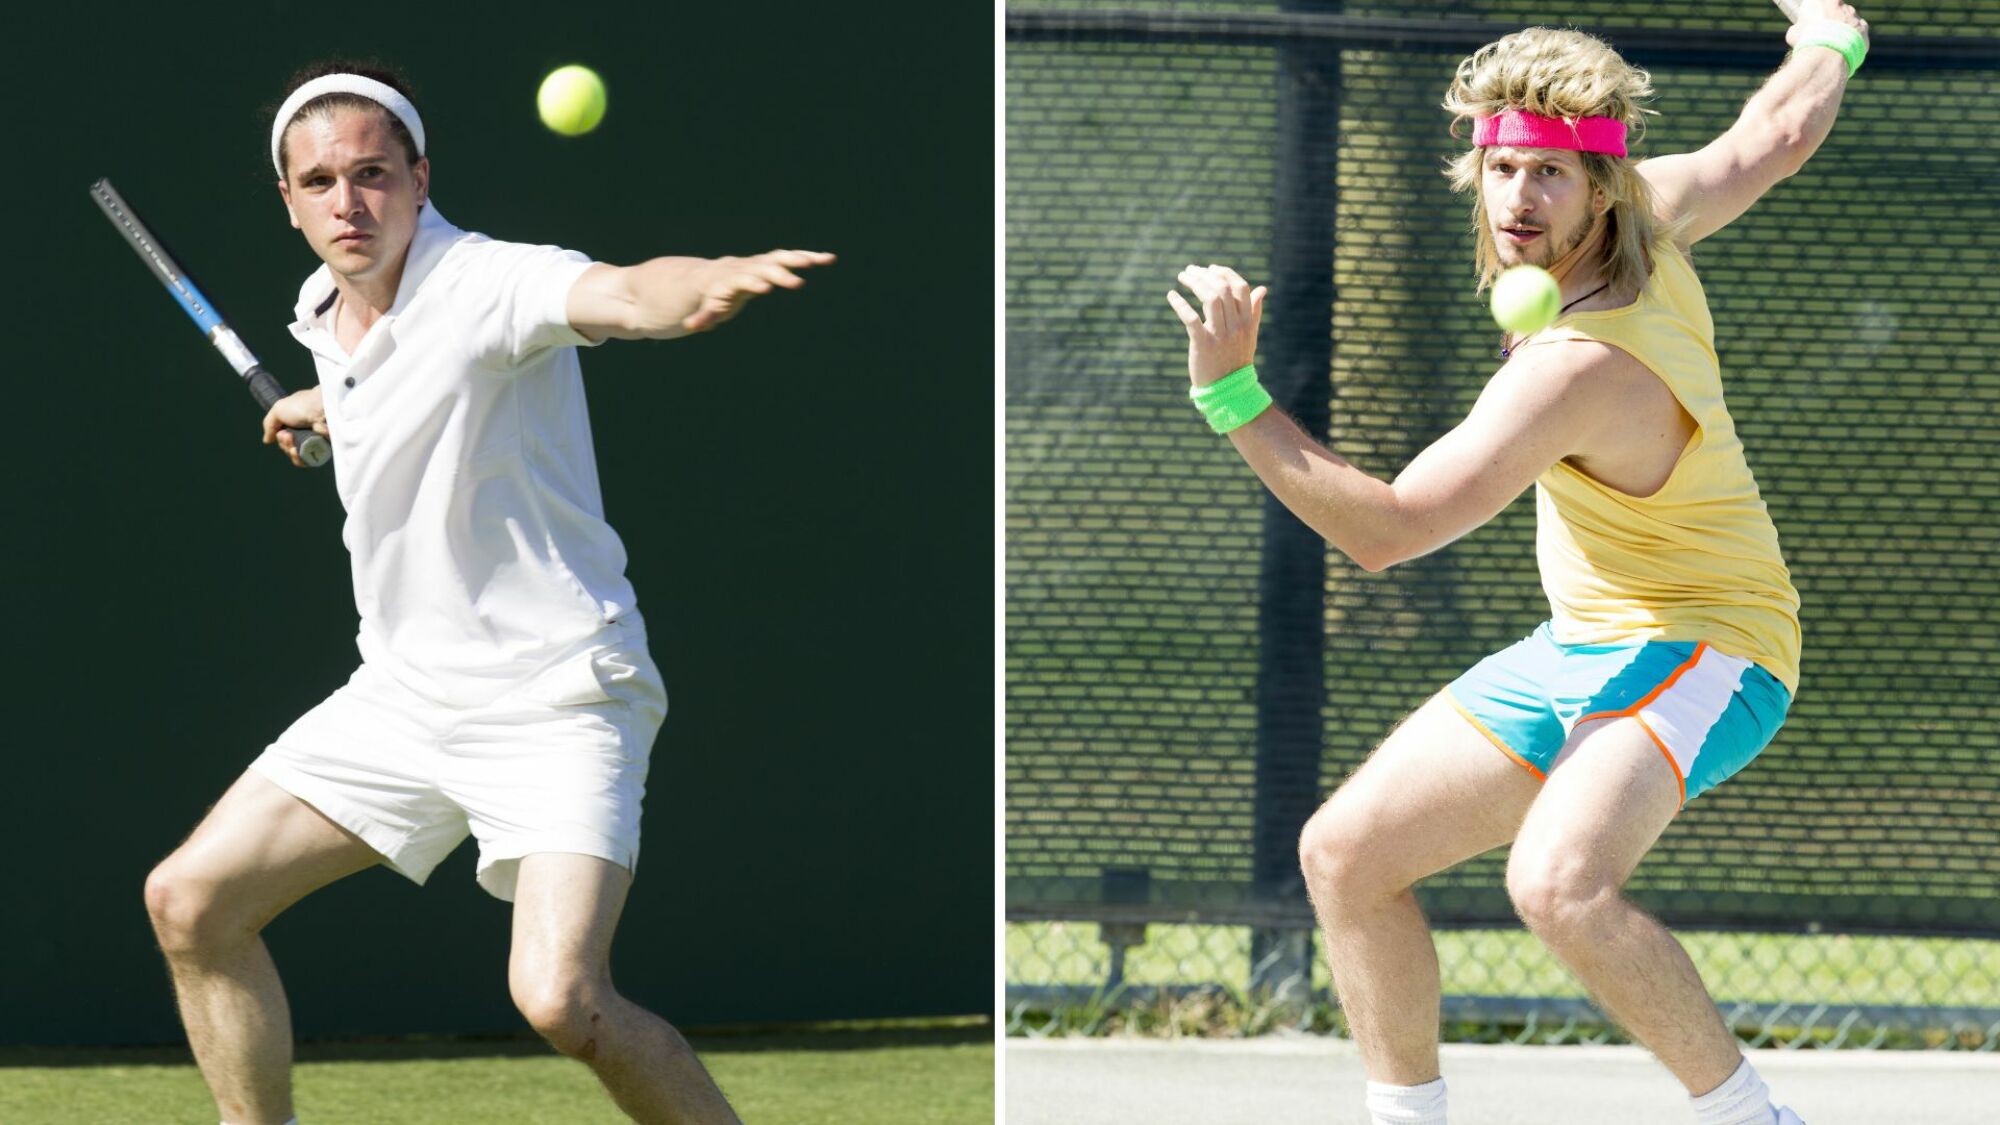 Deux joueurs de tennis – l’un vêtu d’un uniforme entièrement blanc, l’autre vêtu d’un débardeur et d’un short fluo – jouent au tennis.